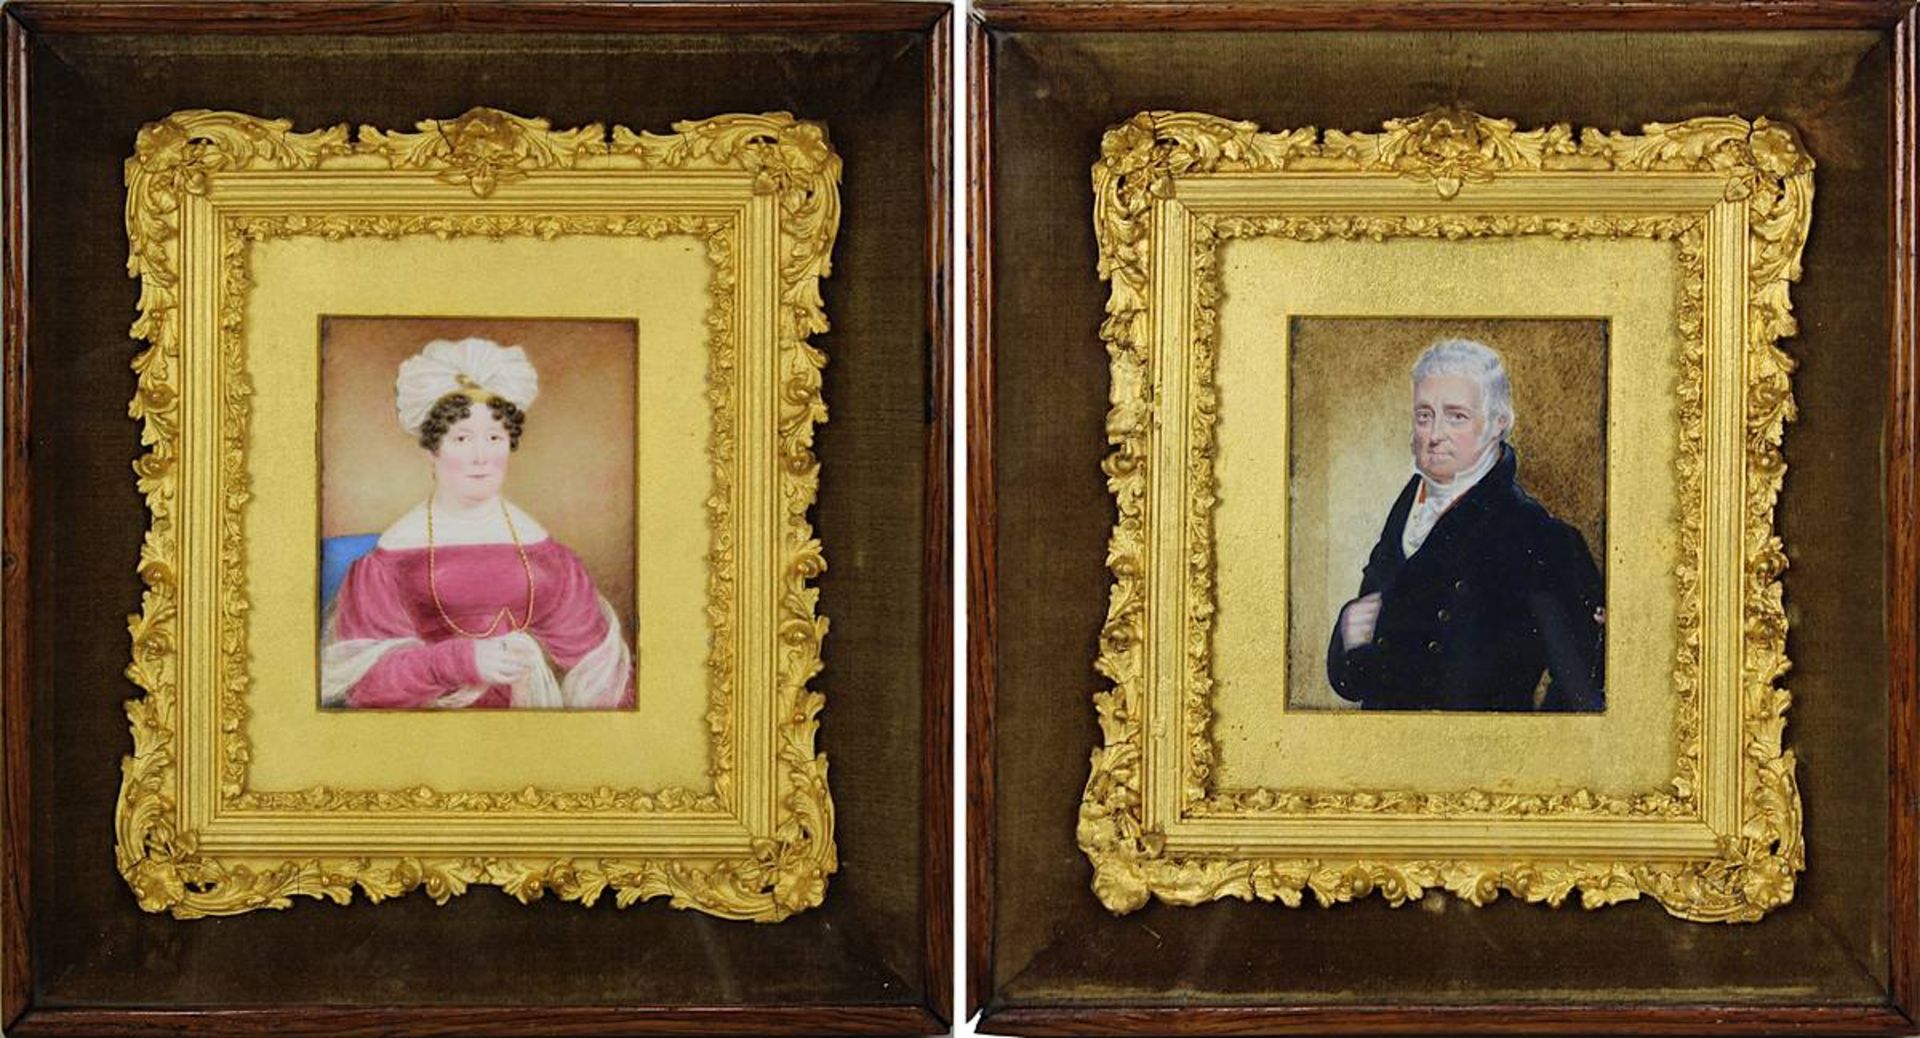 Miniaturbildnisse eines Ehepaares, um 1820, Tempera wohl auf Elfenbein, fein gemalte Portraits eines